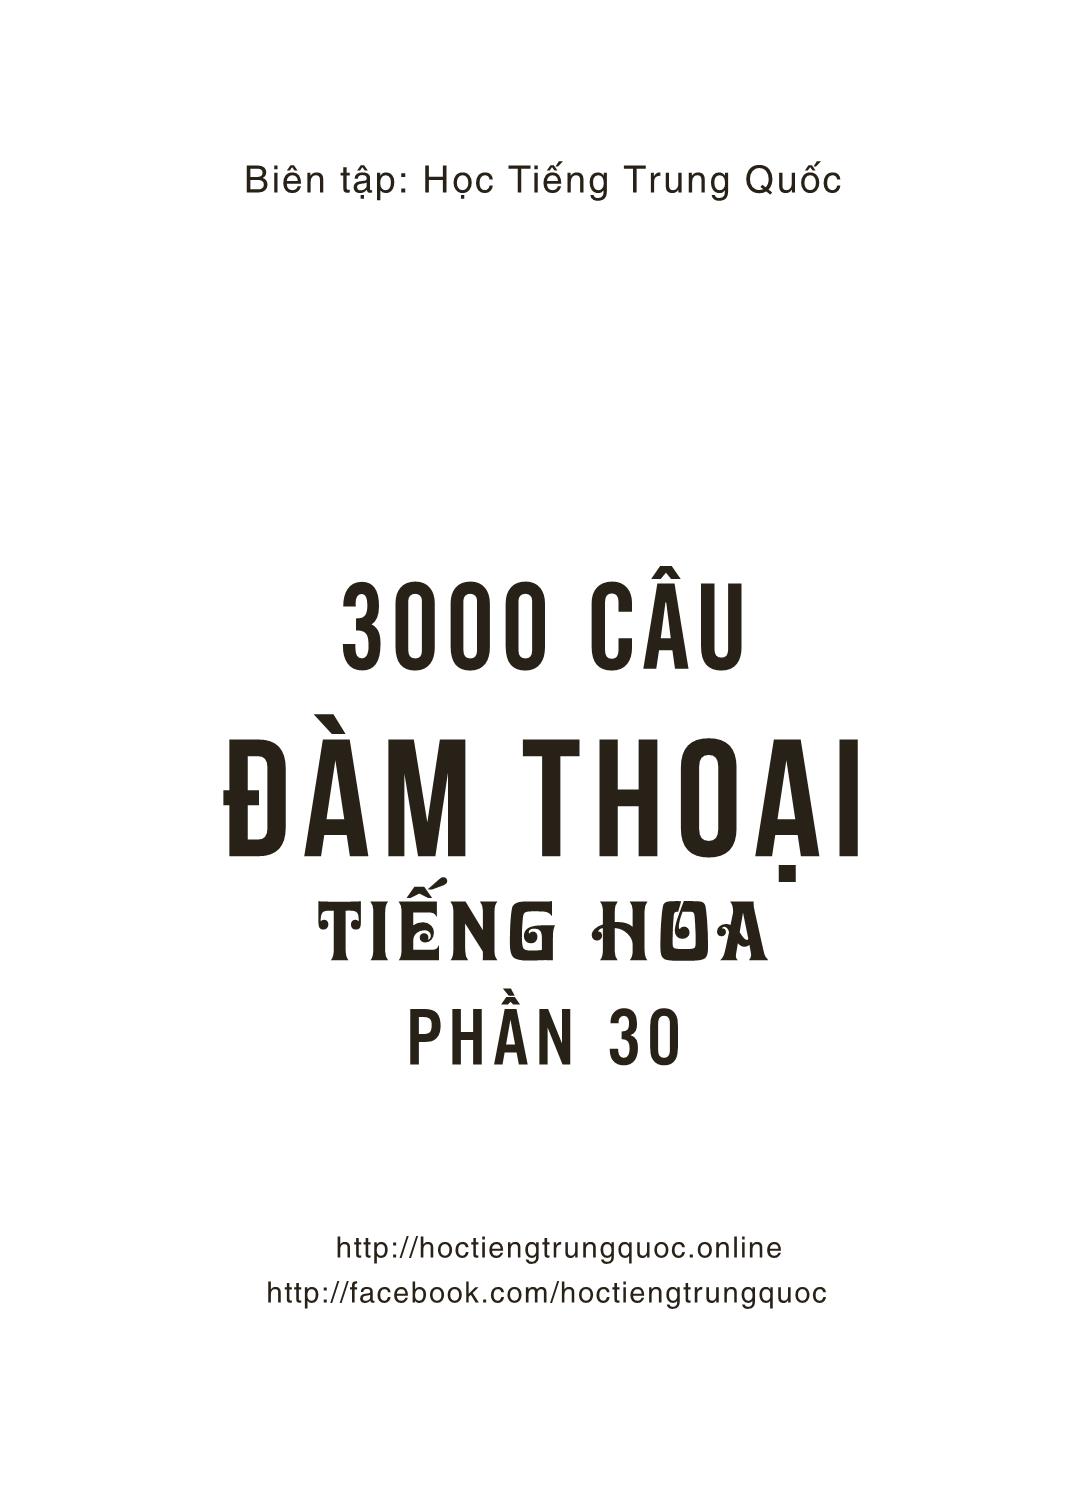 3000 Câu đàm thoại tiếng Hoa - Phần 30 trang 2